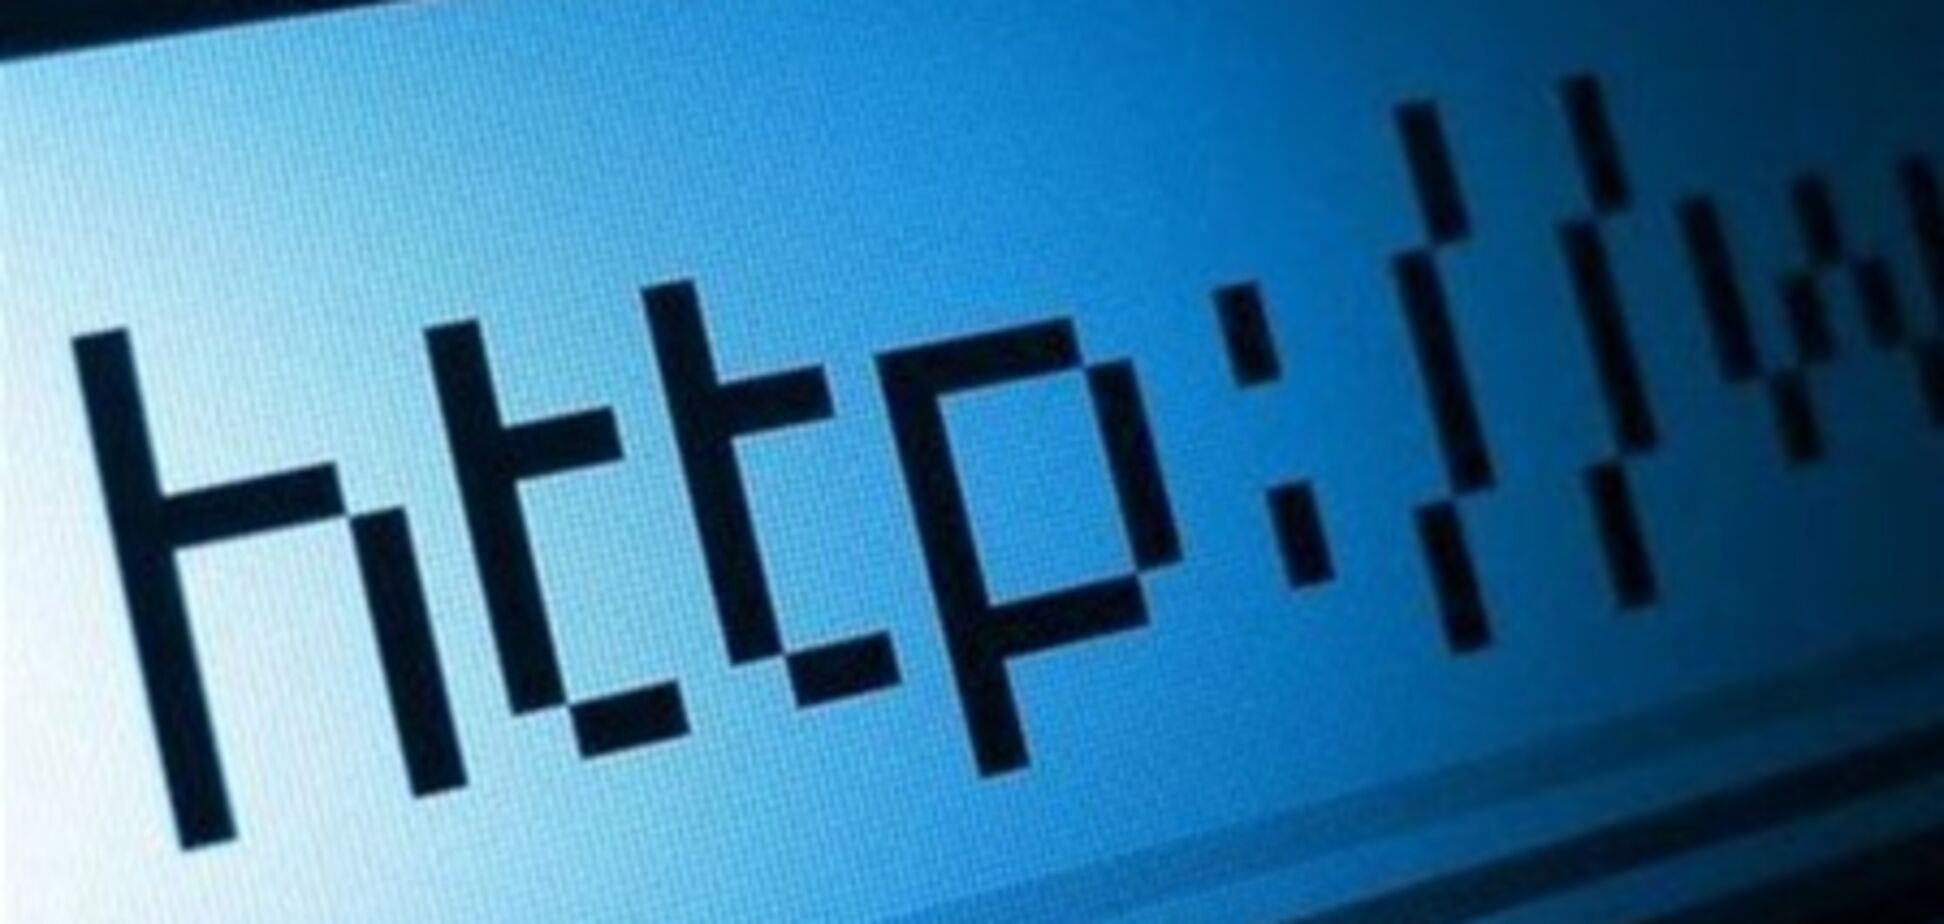 На Луганщине сельский голова требовал взятку за доступ в интернет